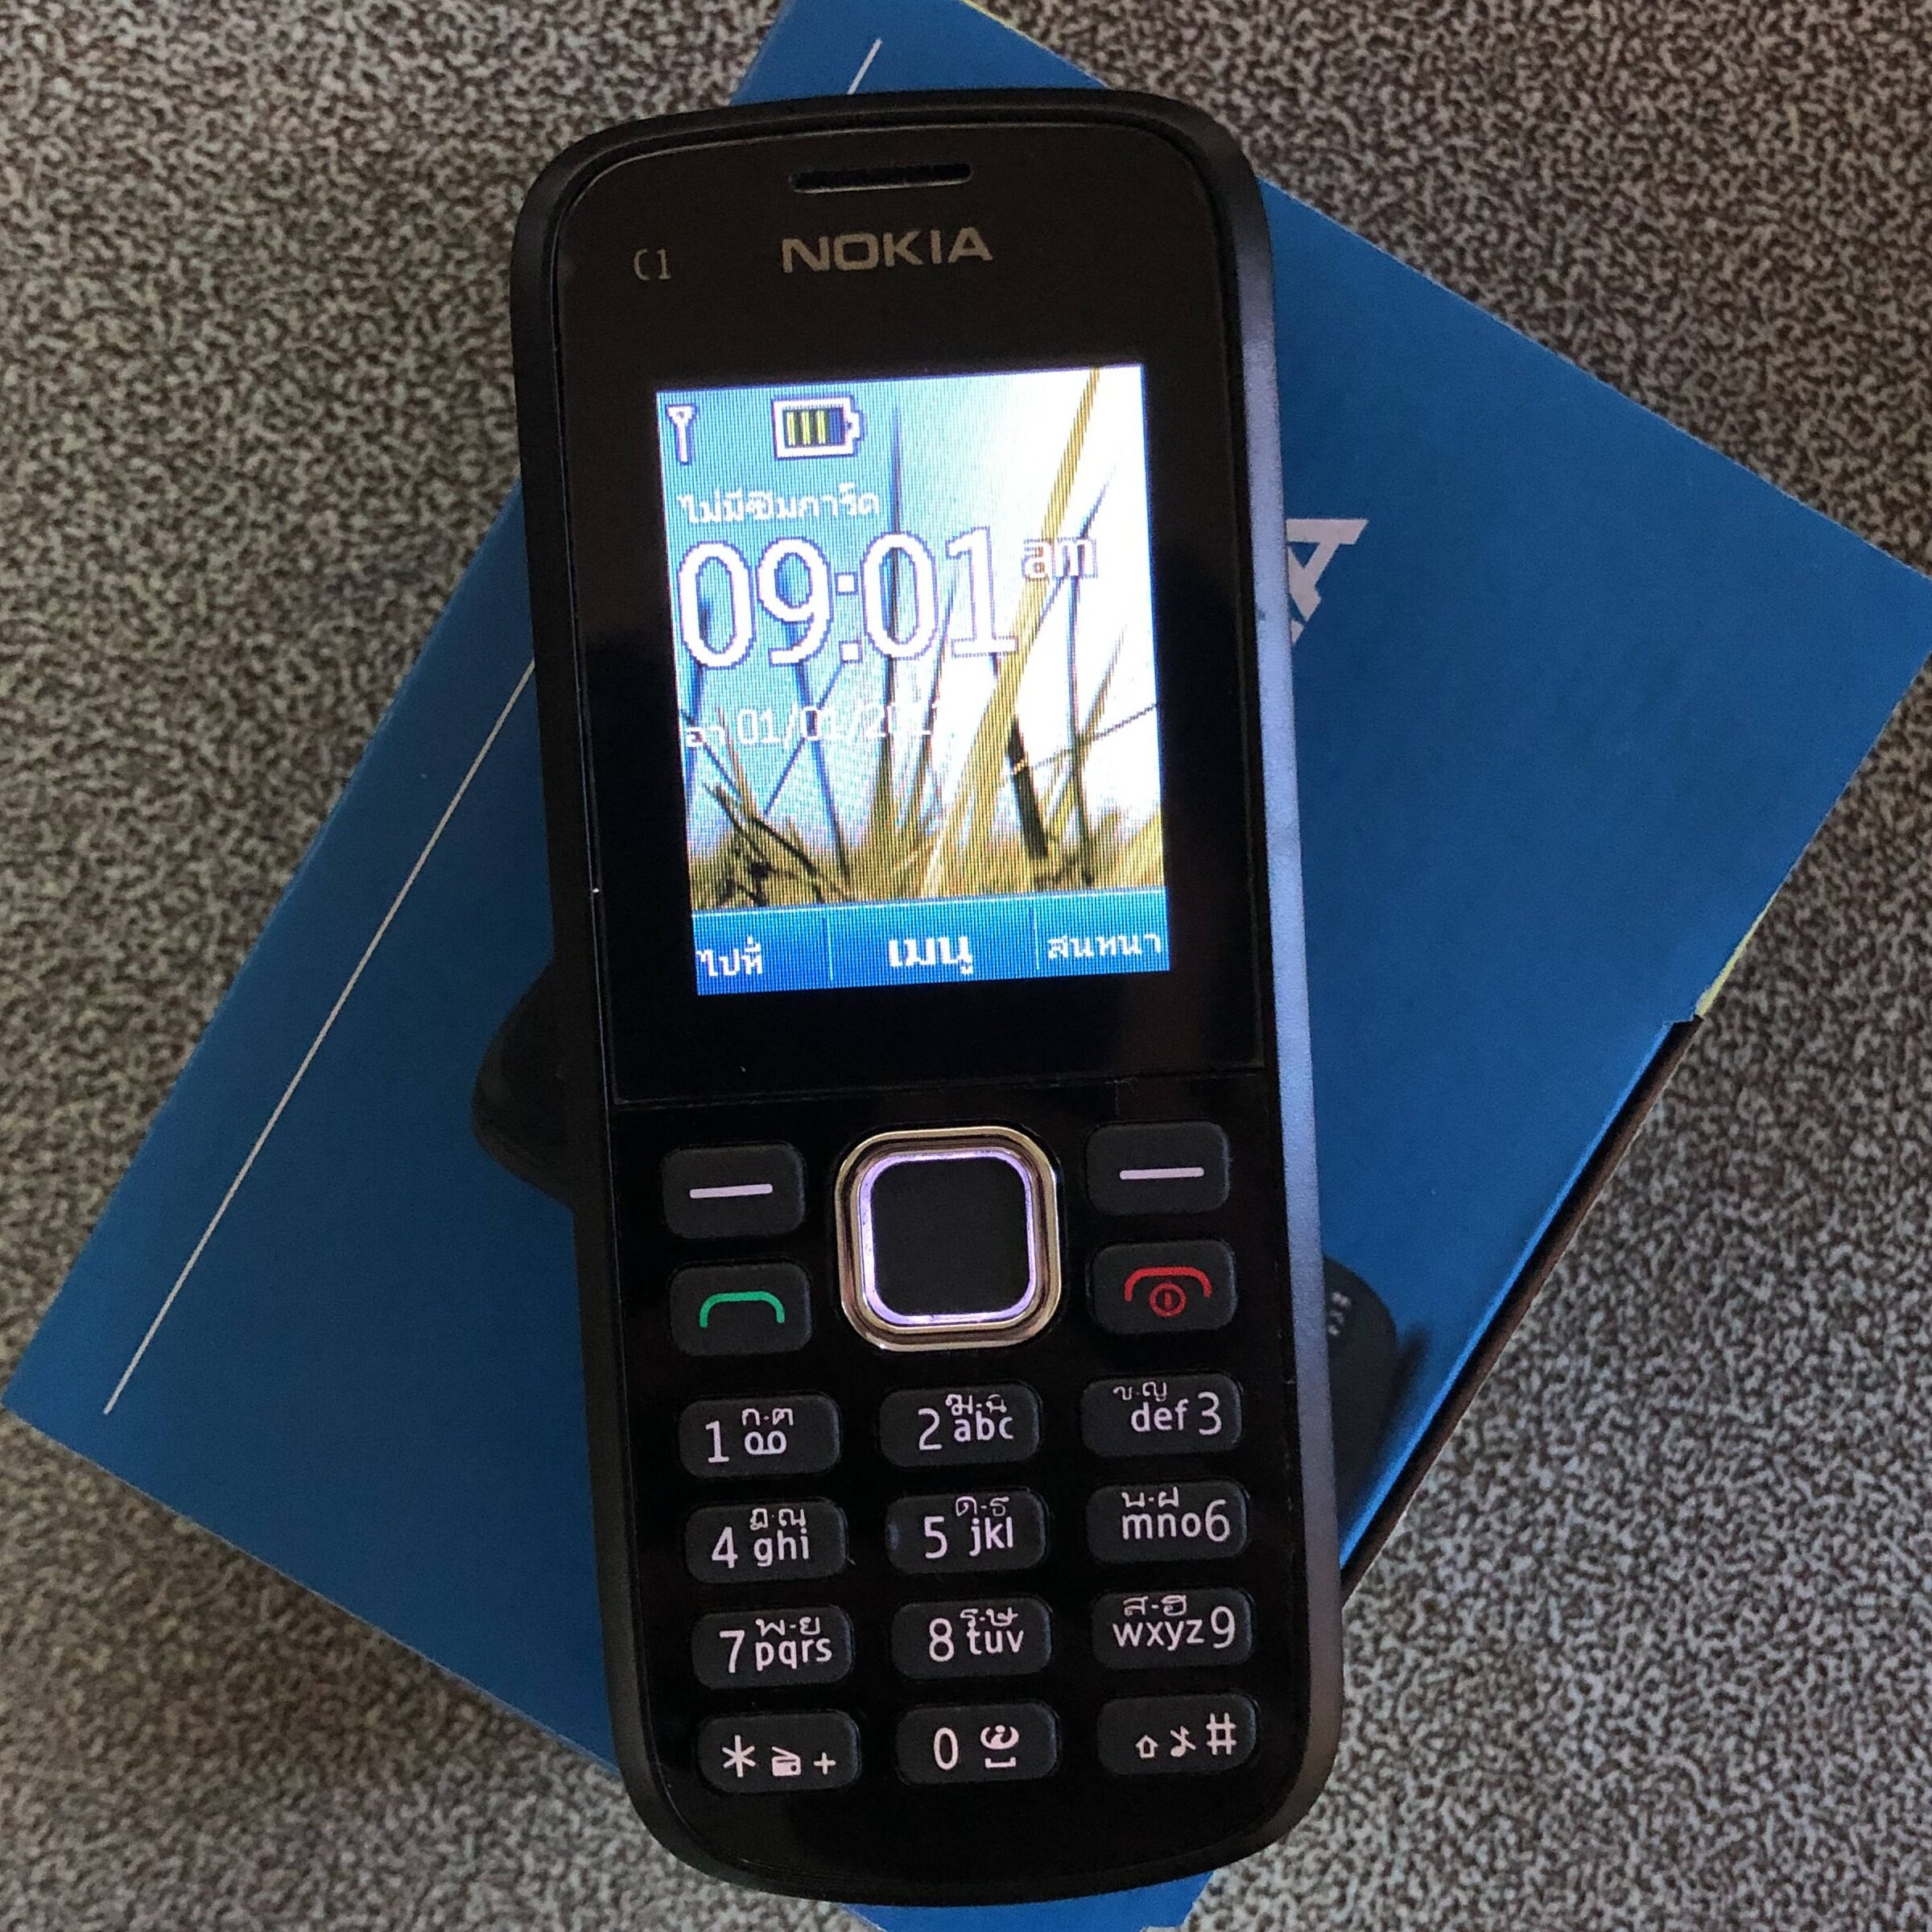 NOKIA โทรศัพท์มือถือโนเกียแท้คลาสสิกแท้รับประกัน C1-02 นาน 1 เดือน